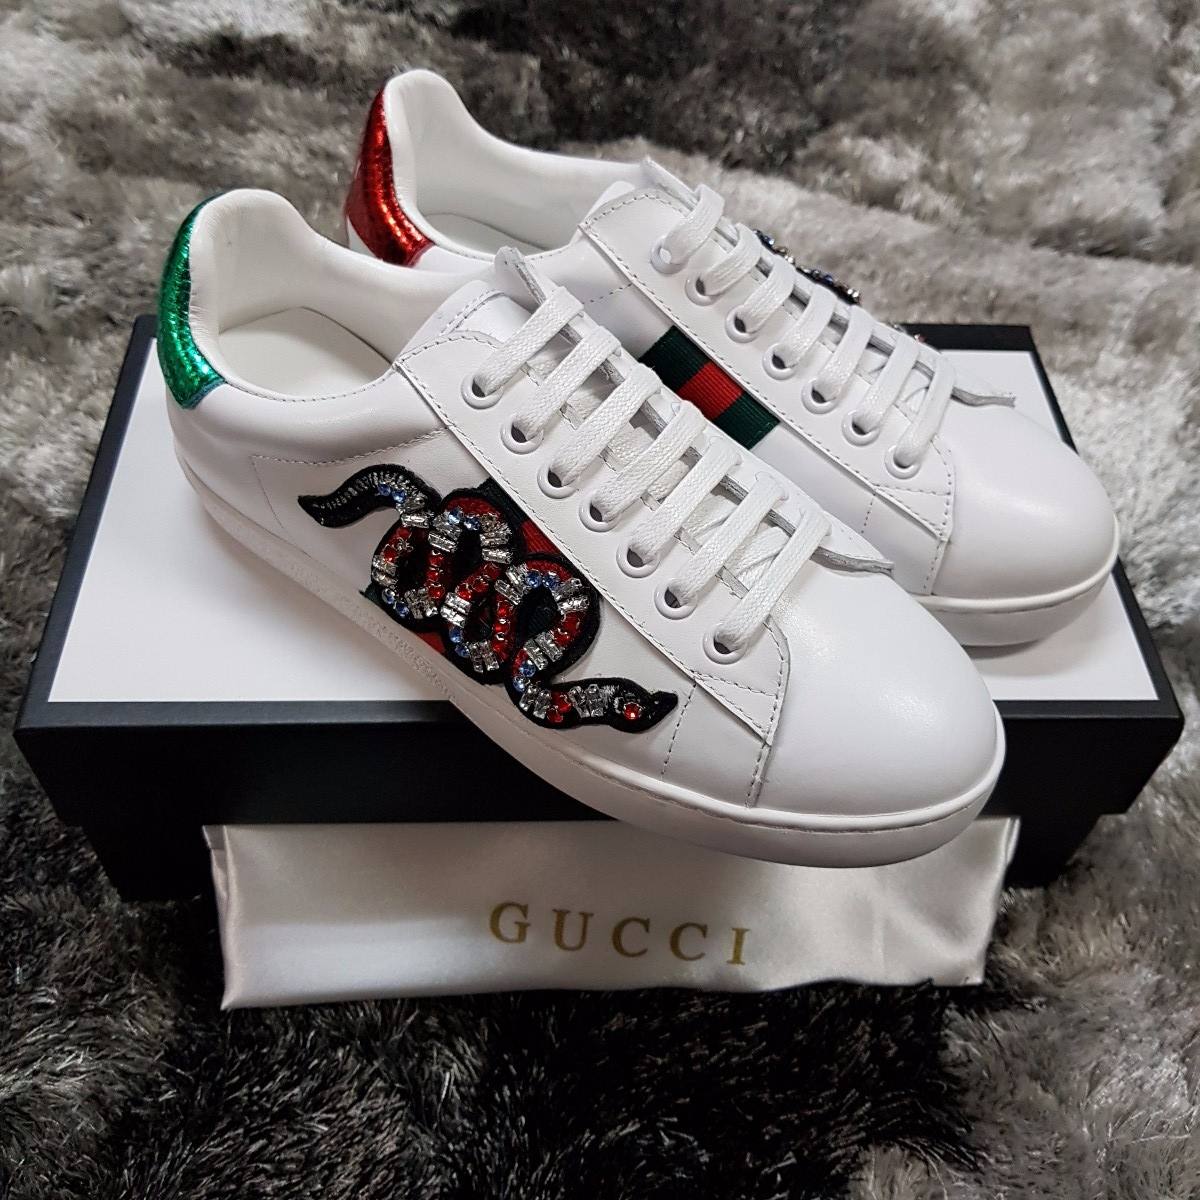 Zapatos Gucci De Dama - deportesinc.com 1688008134